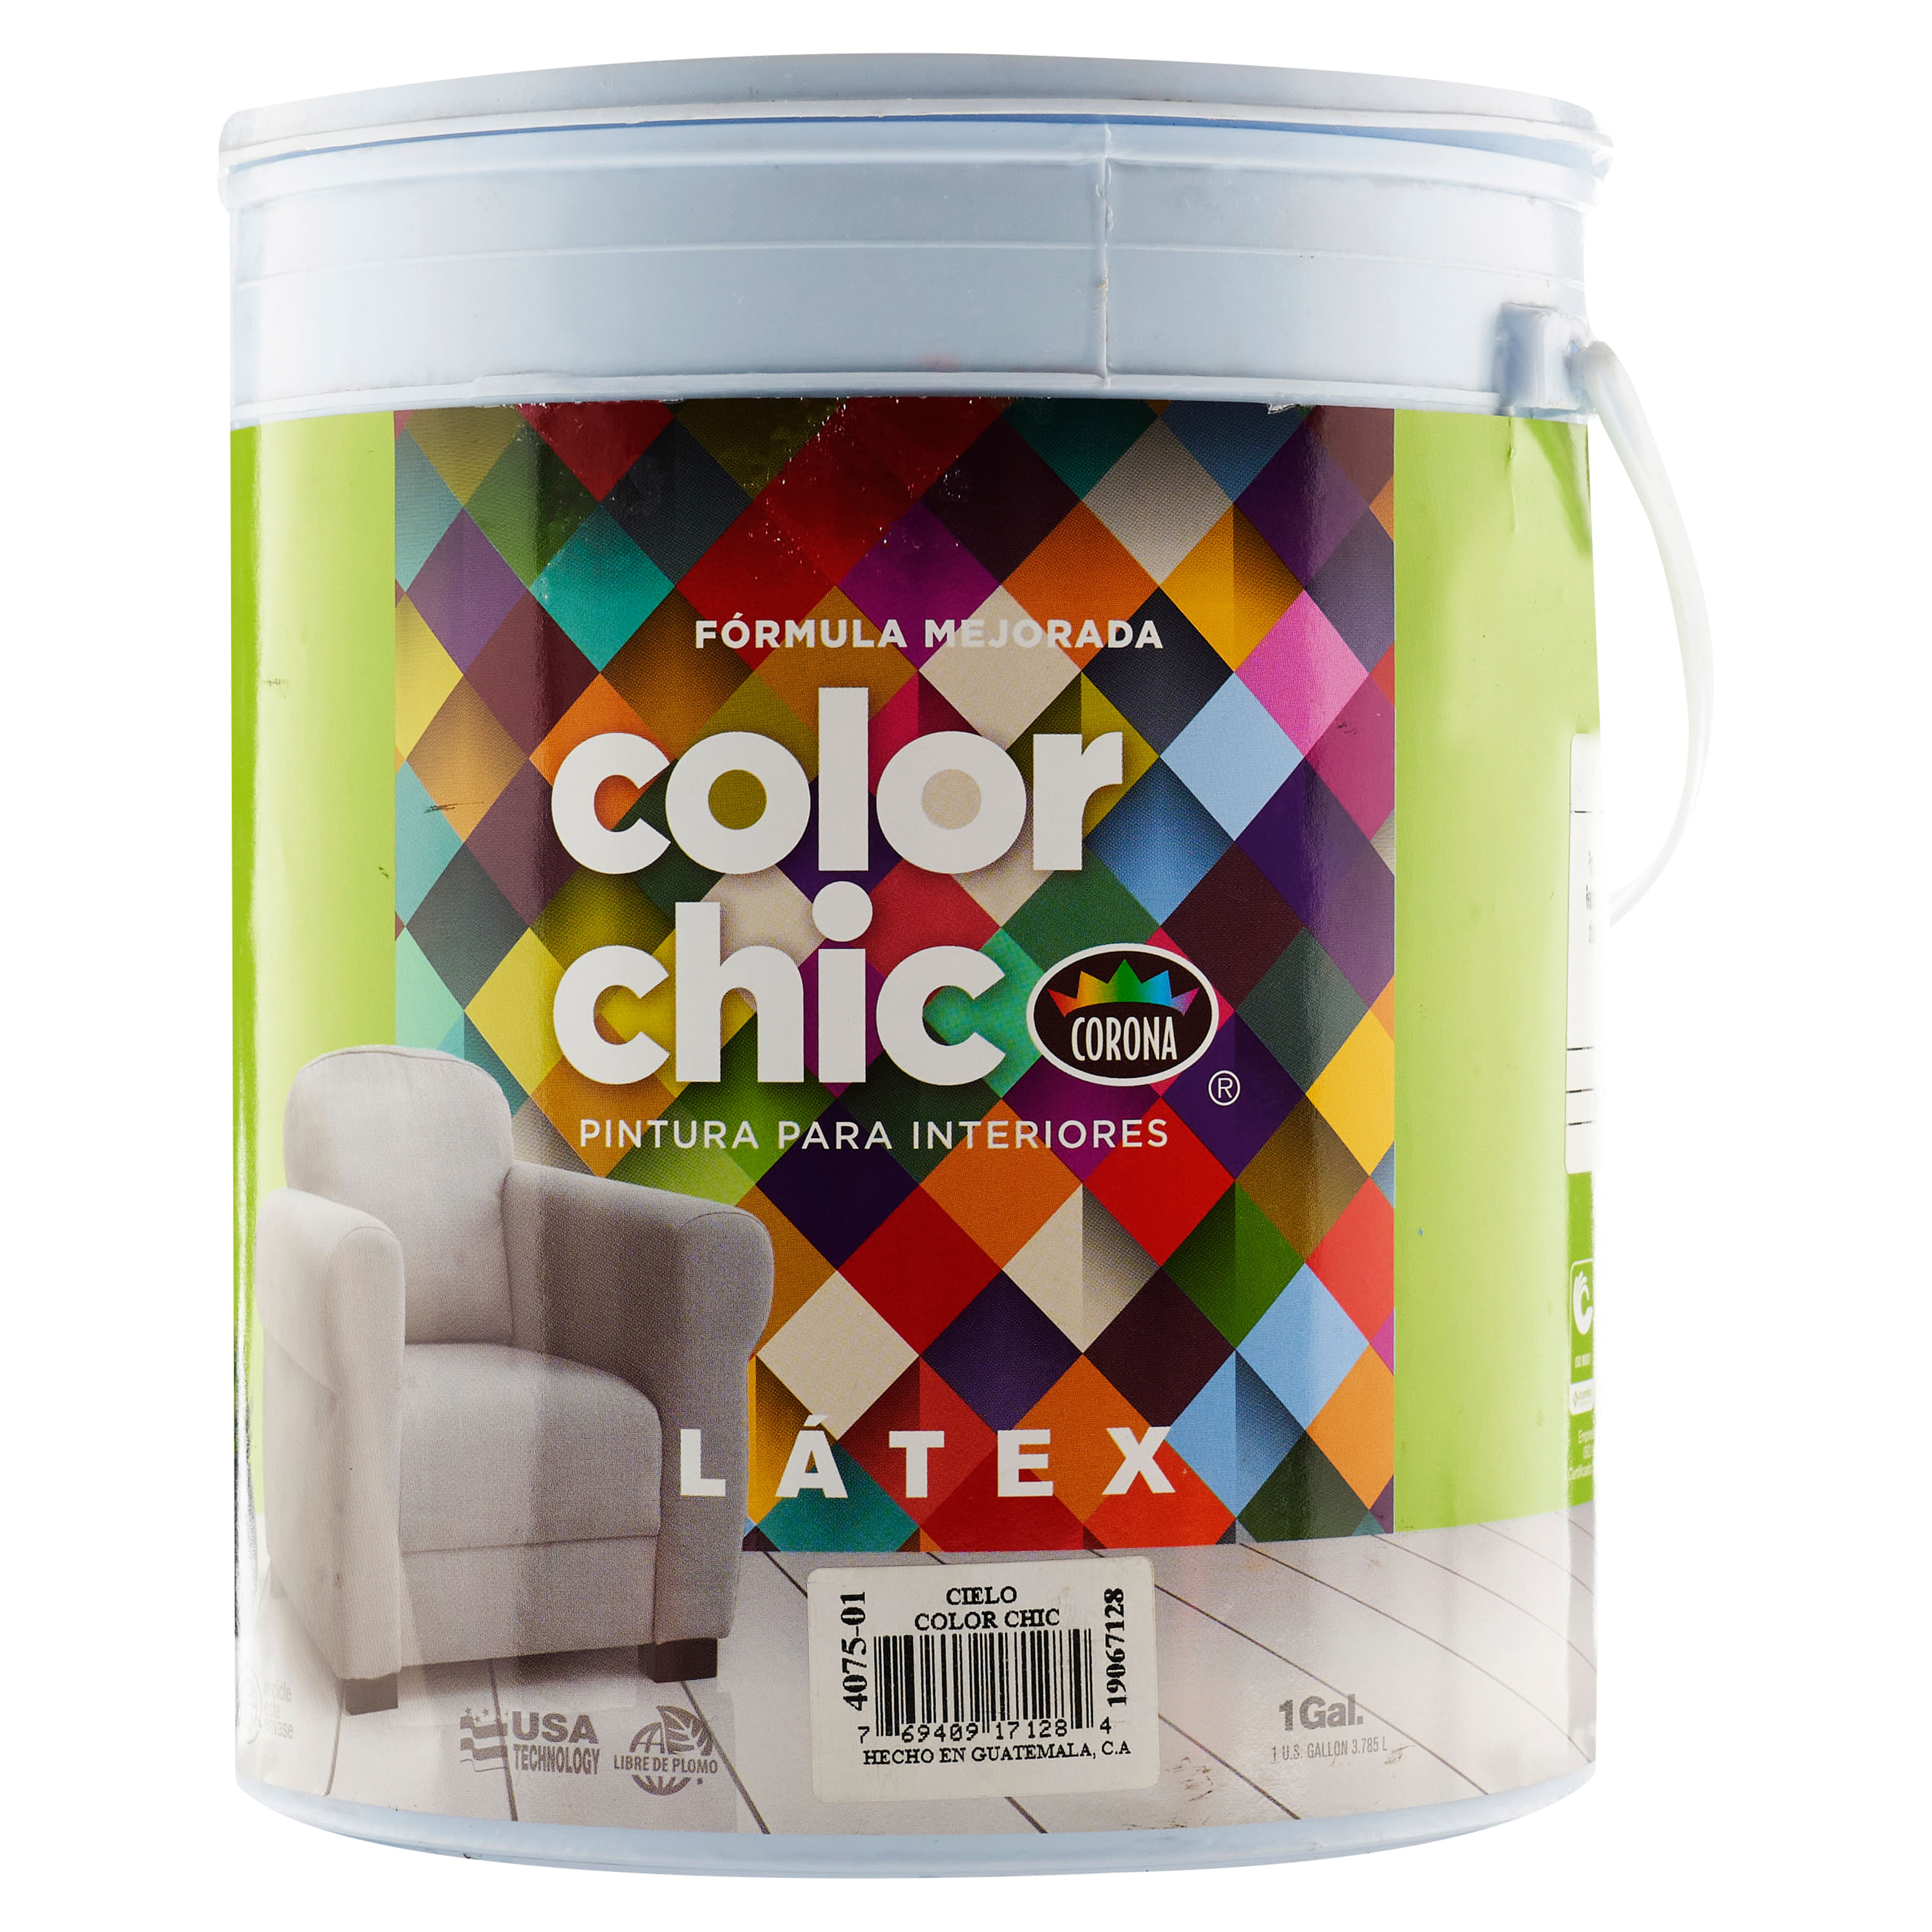 Finalmente frío especificar Comprar Pintura Color Chic Lat Cielo Galon | Walmart El Salvador